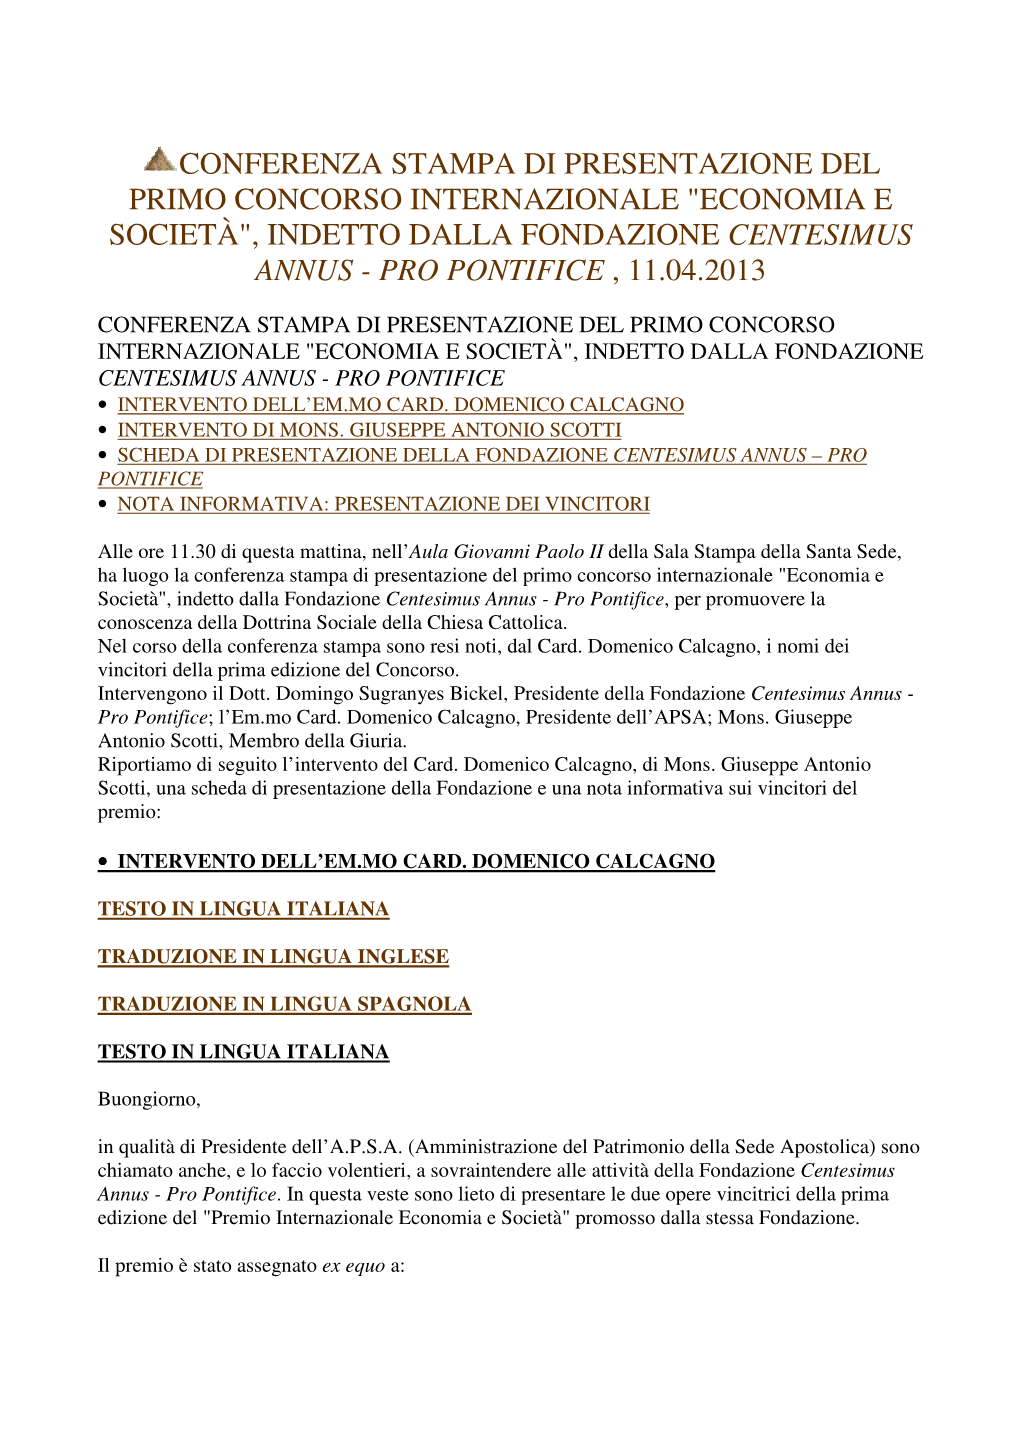 Conferenza Stampa Di Presentazione Del Primo Concorso Internazionale "Economia E Società", Indetto Dalla Fondazione Centesimus Annus - Pro Pontifice , 11.04.2013